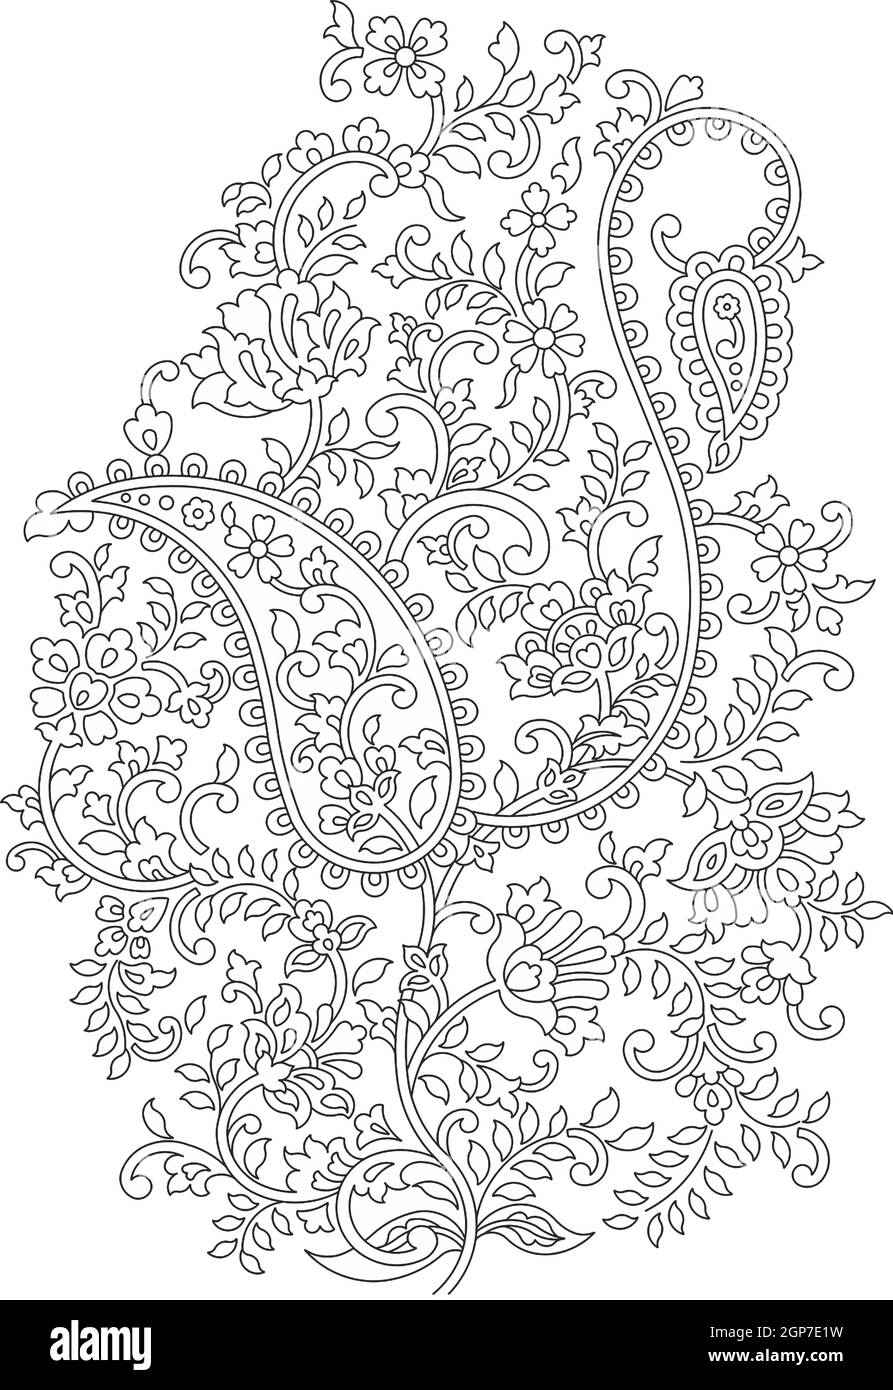 Florales Design, Stickmuster. Schwarz Und Weiß Und Stockillustration Handgezeichnet. Fantasieblumen Blätter. T-Shirt-Dessin. Lizenzfreies Clipart Stockfoto